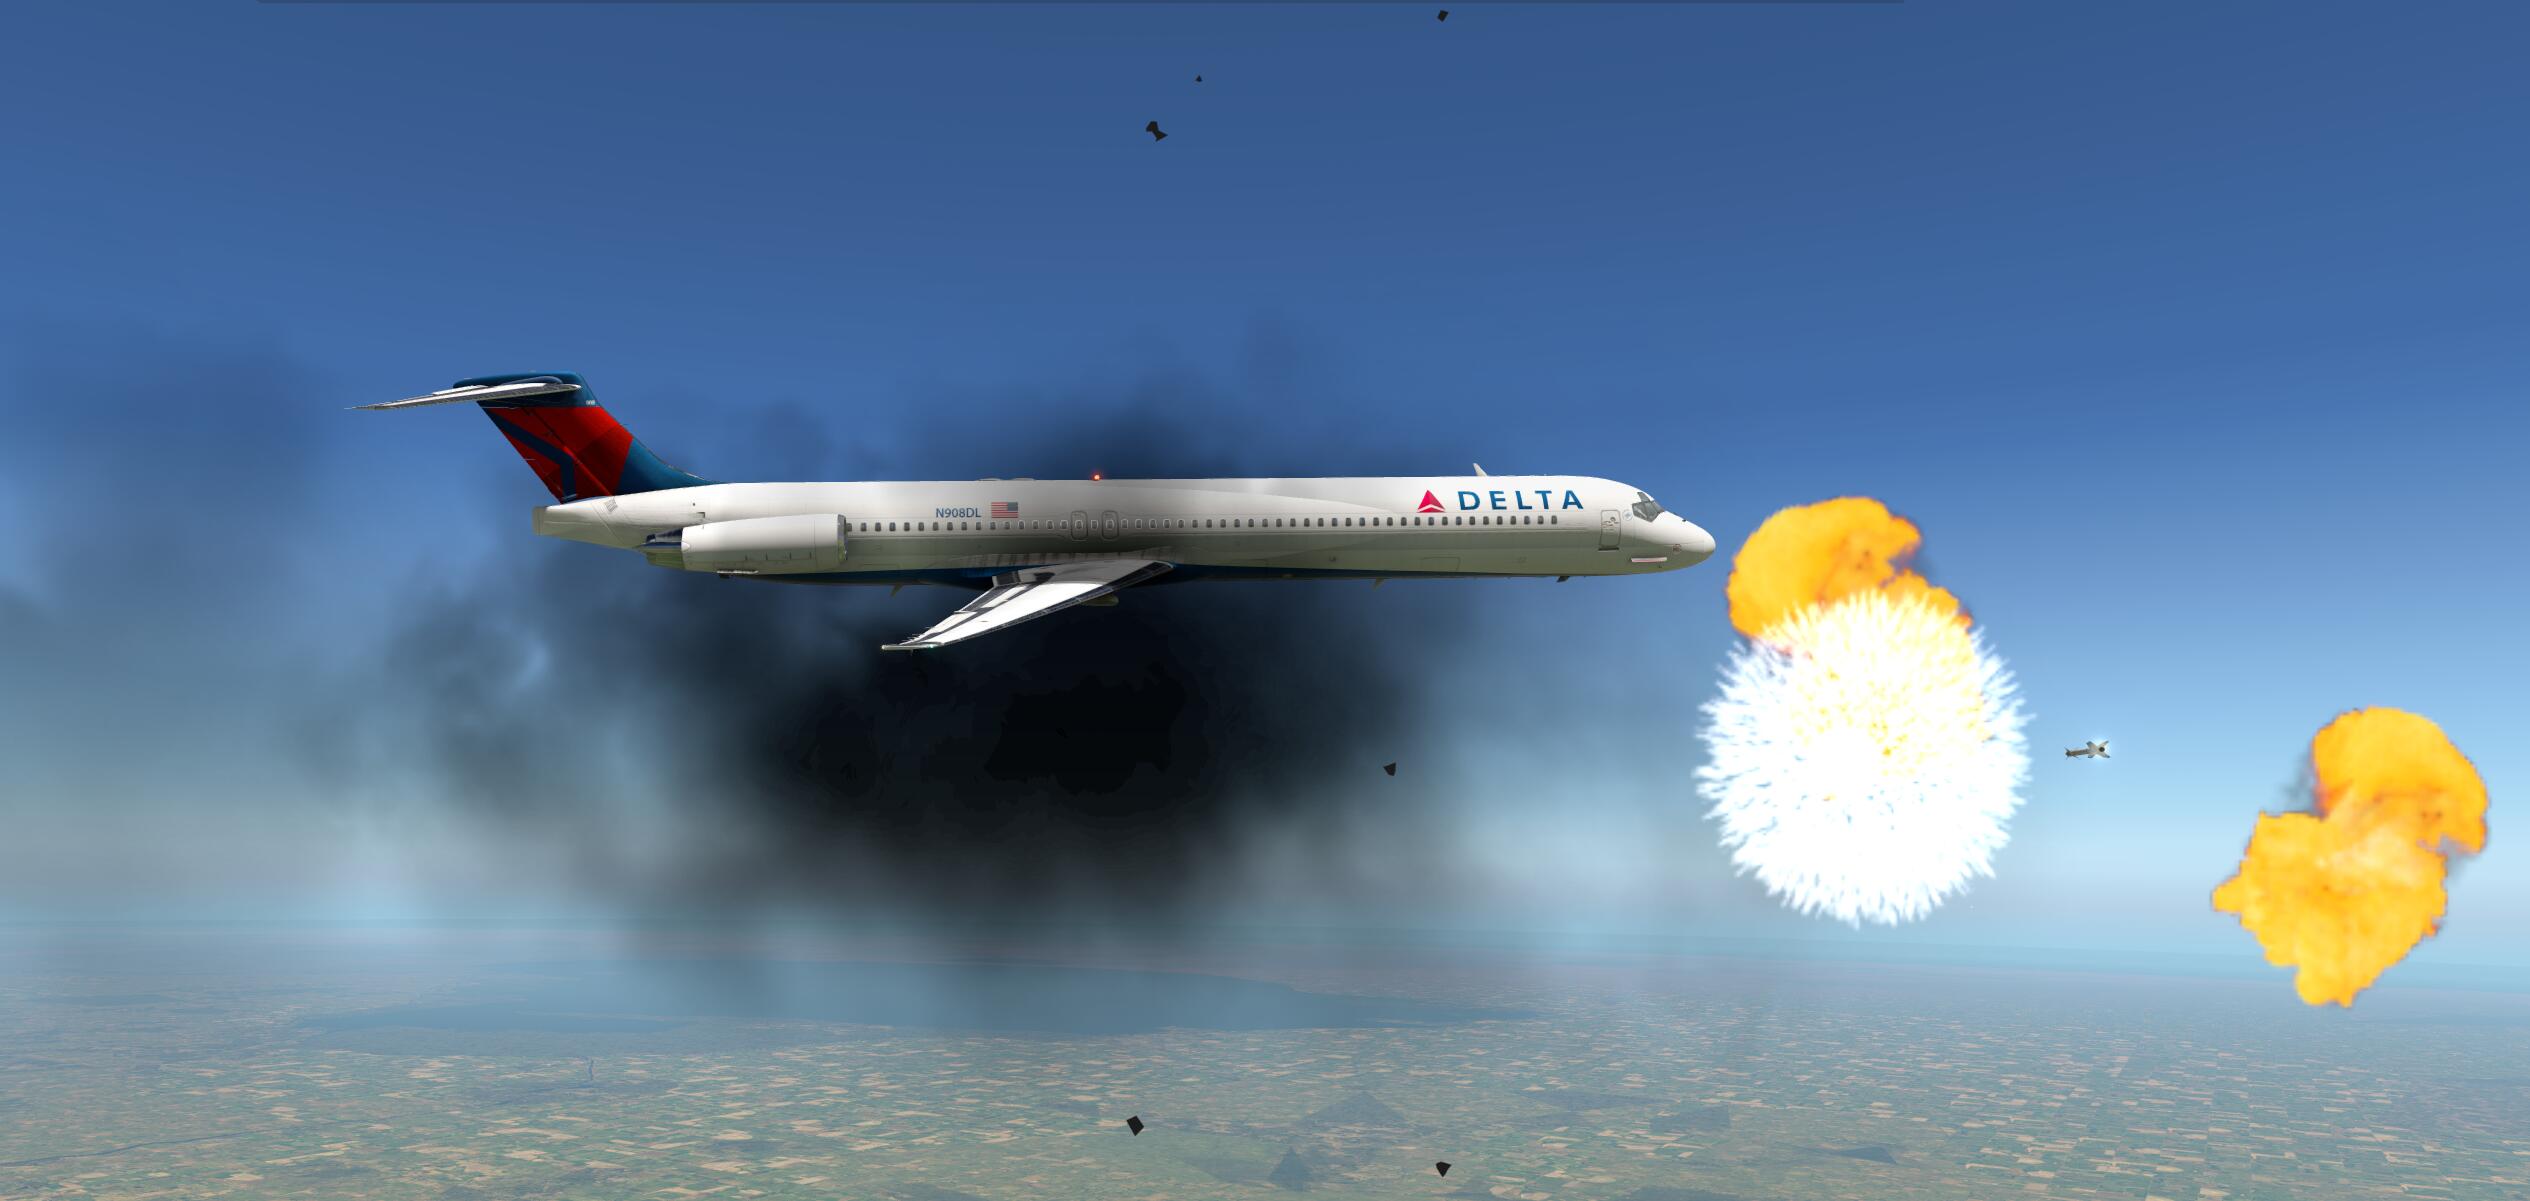 还记得马航MH17吗？被导弹击落的瞬间-9499 